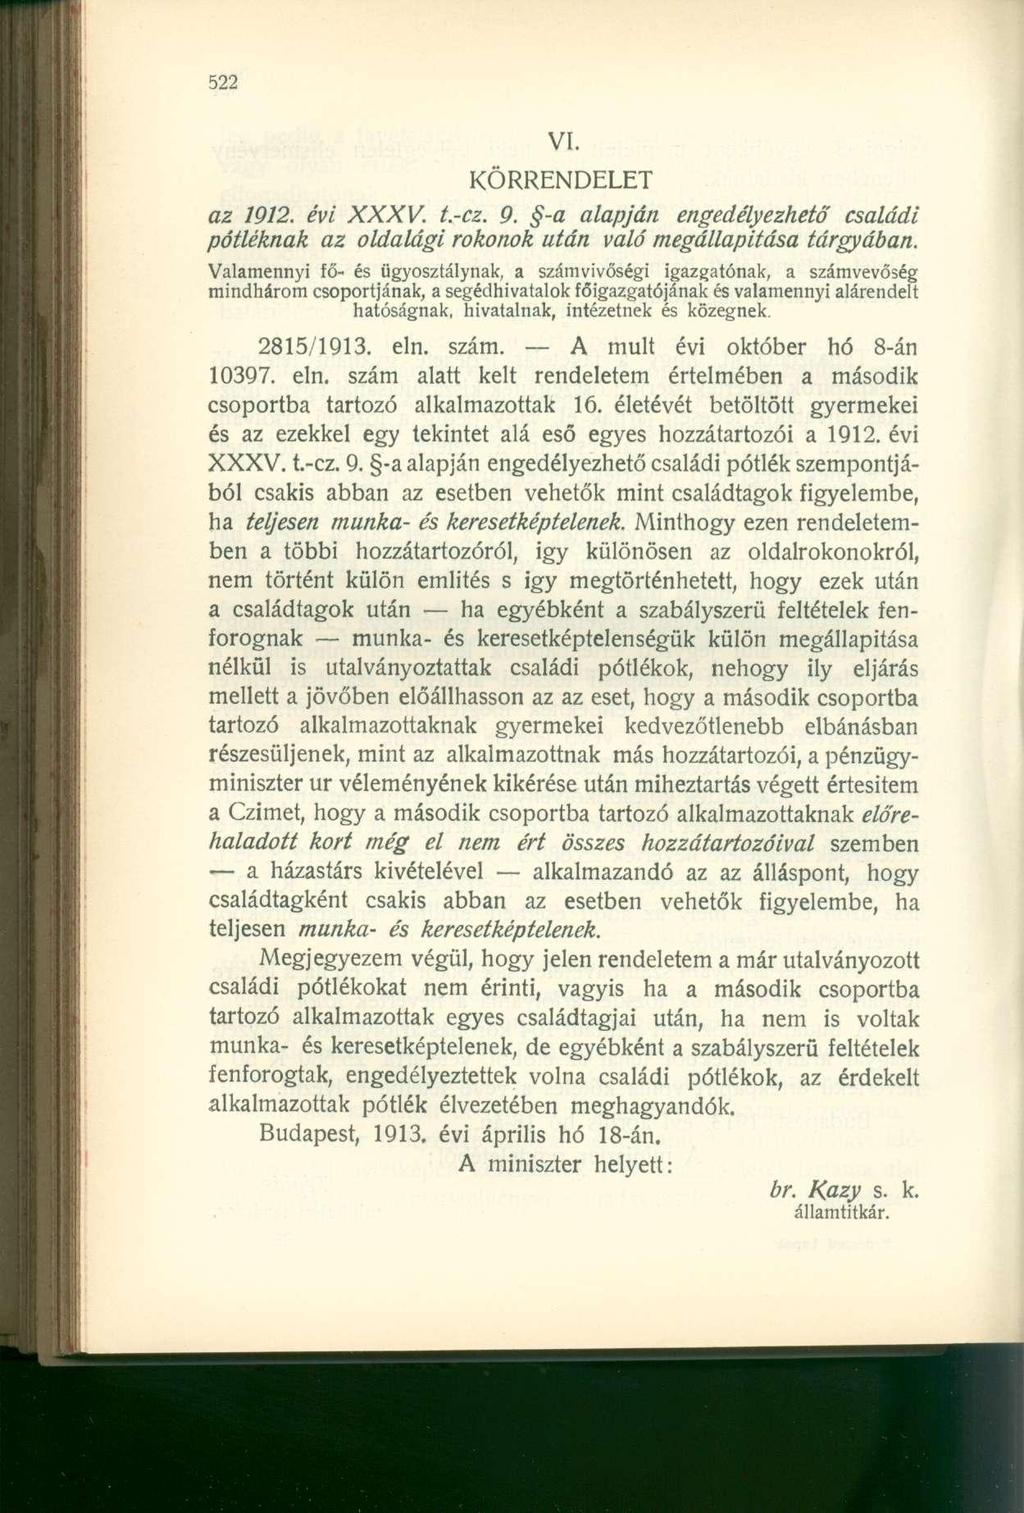 KÖRRENDELET az 1912. évi XXXV. t.-cz. 9. -a alapján engedélyezhető családi pótléknak az oldalági rokonok után való megállapítása tárgyában.